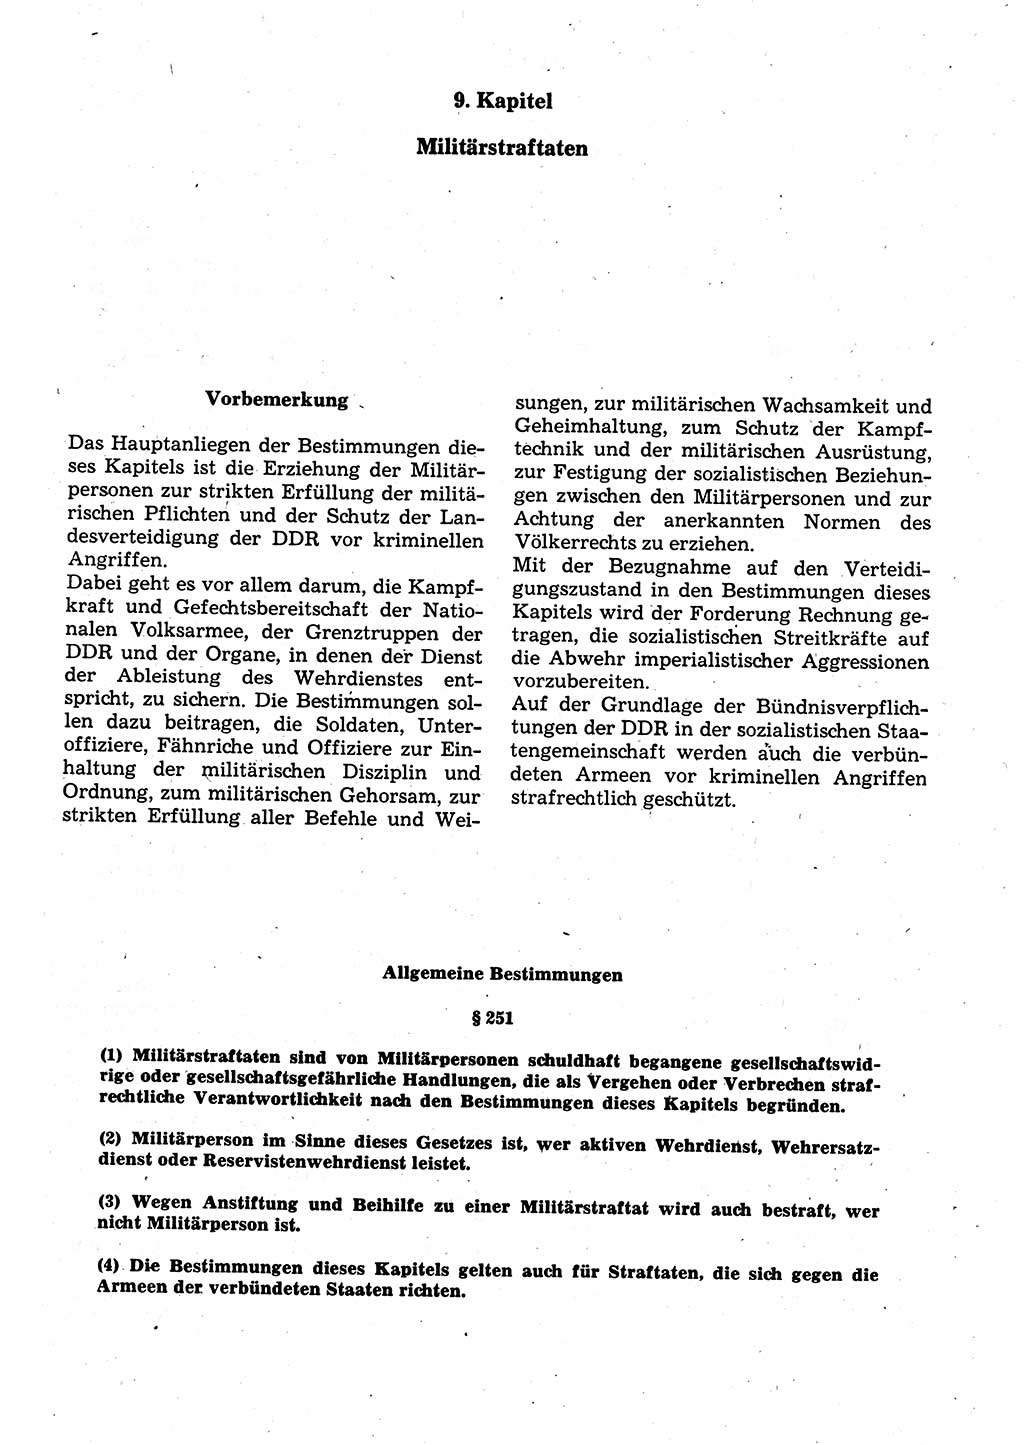 Strafrecht der Deutschen Demokratischen Republik (DDR), Kommentar zum Strafgesetzbuch (StGB) 1987, Seite 527 (Strafr. DDR Komm. StGB 1987, S. 527)